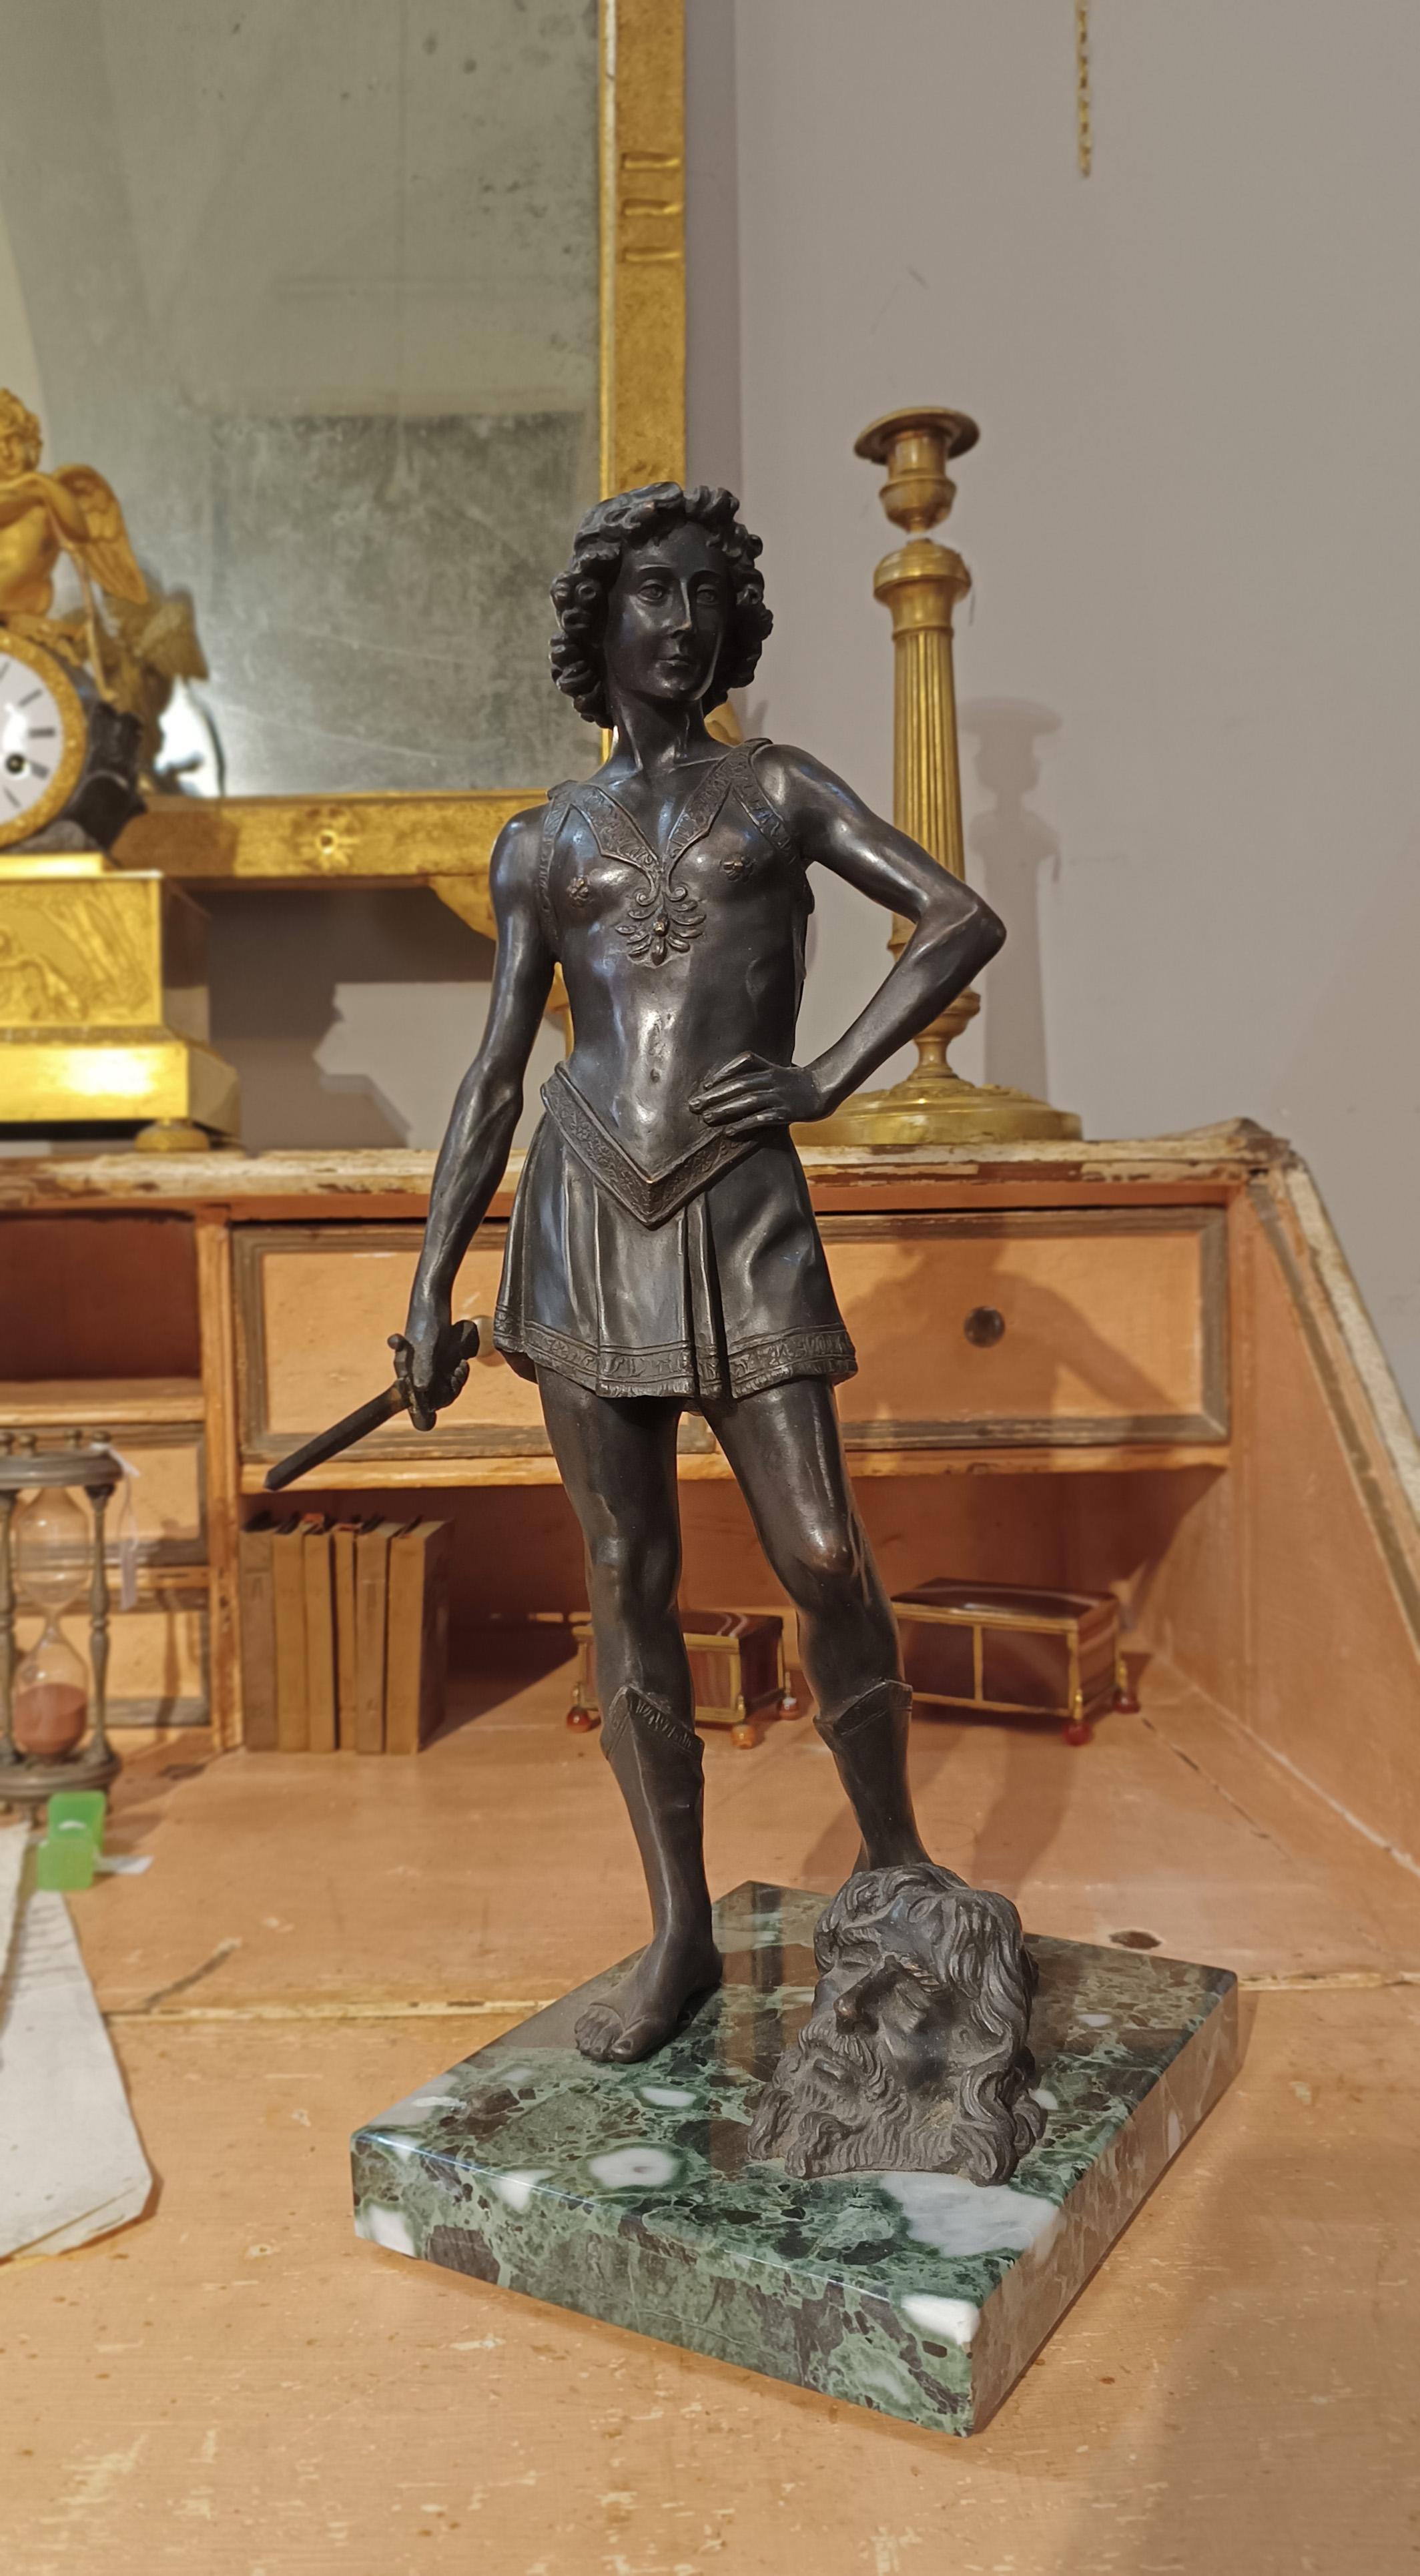 Belle sculpture en bronze coulée selon la technique de la cire perdue, représentant le jeune David debout, l'épée levée, symbole de sa victoire sur le géant Goliath, dont la tête souffrante est représentée sur le socle en marbre vert. Avec une